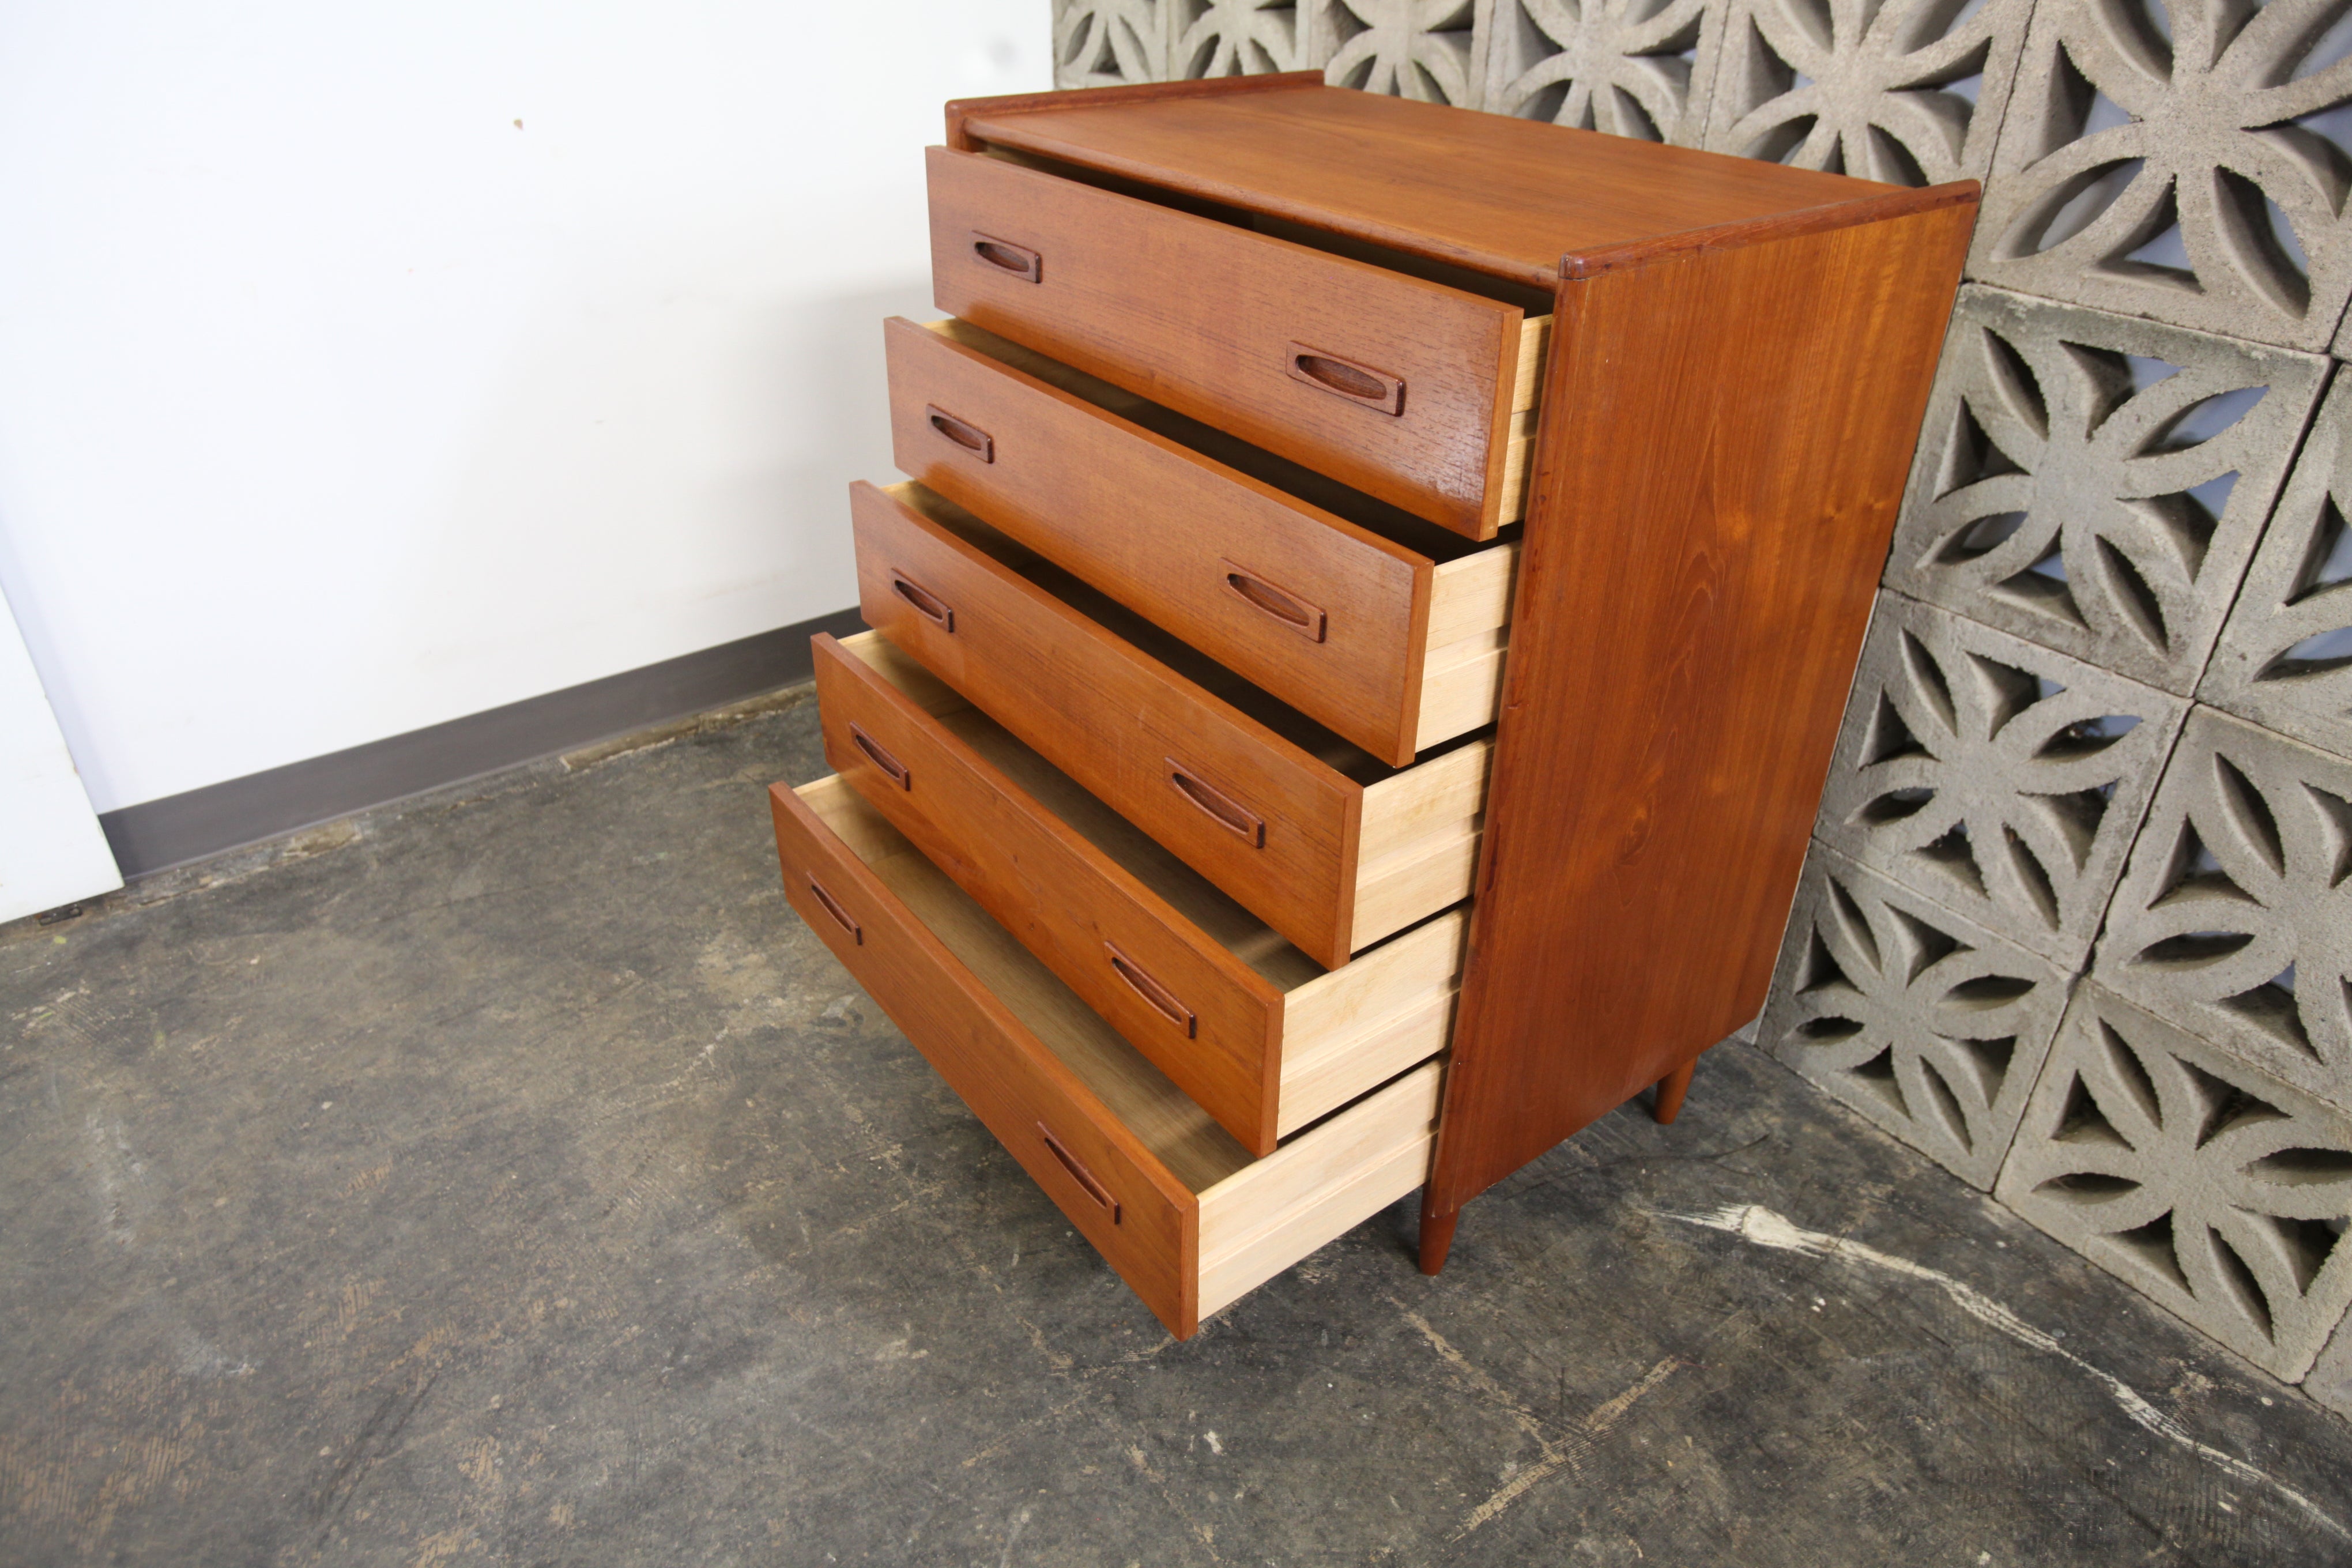 Vintage Teak 5 Drawer Tallboy Dresser (31"W x 19"D x 39.5"H)